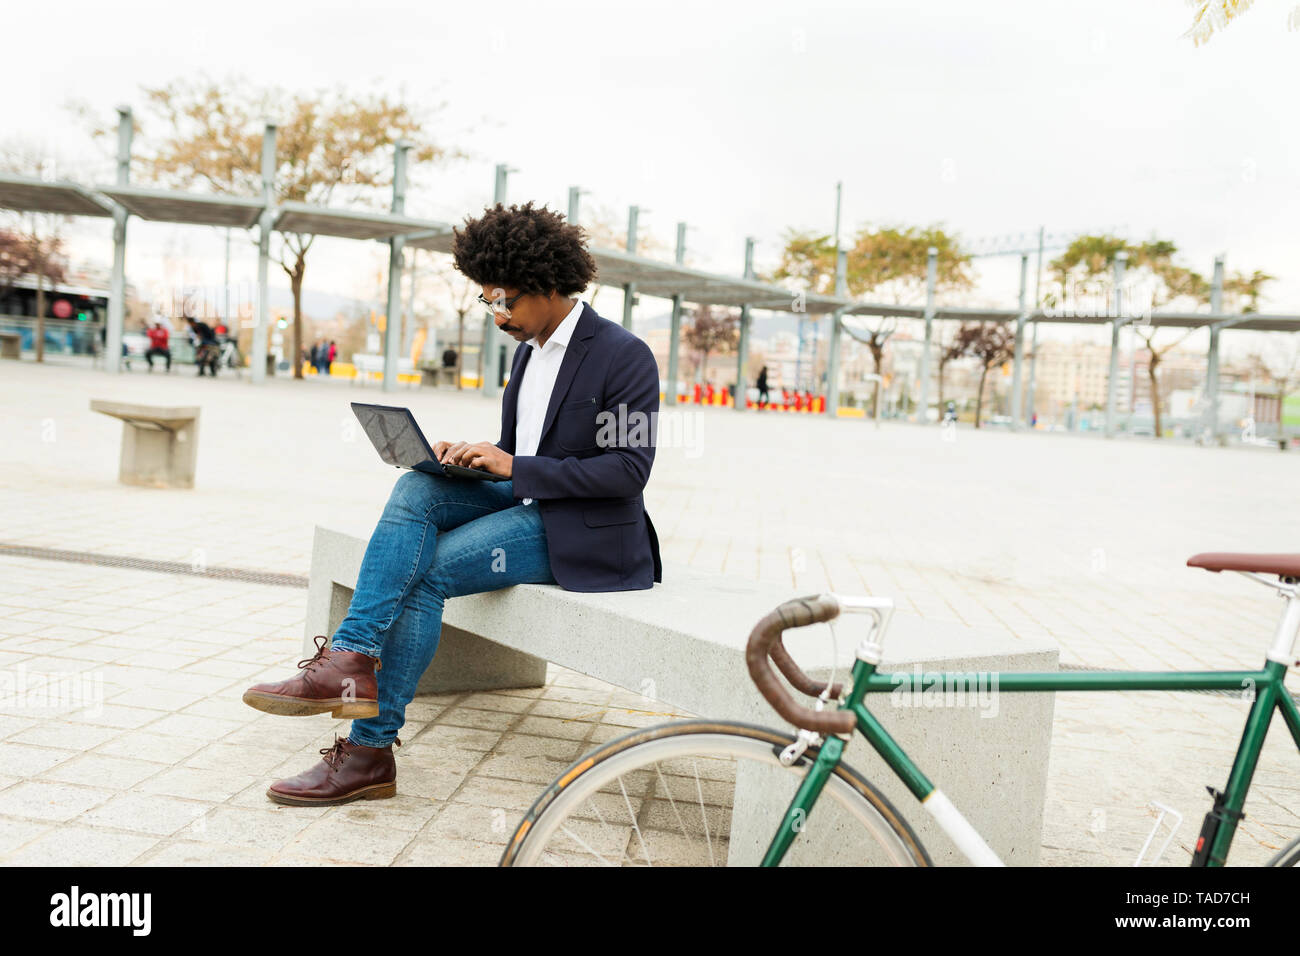 Espagne, Barcelone, homme d'affaires à vélo dans la ville sitting on bench using laptop Banque D'Images